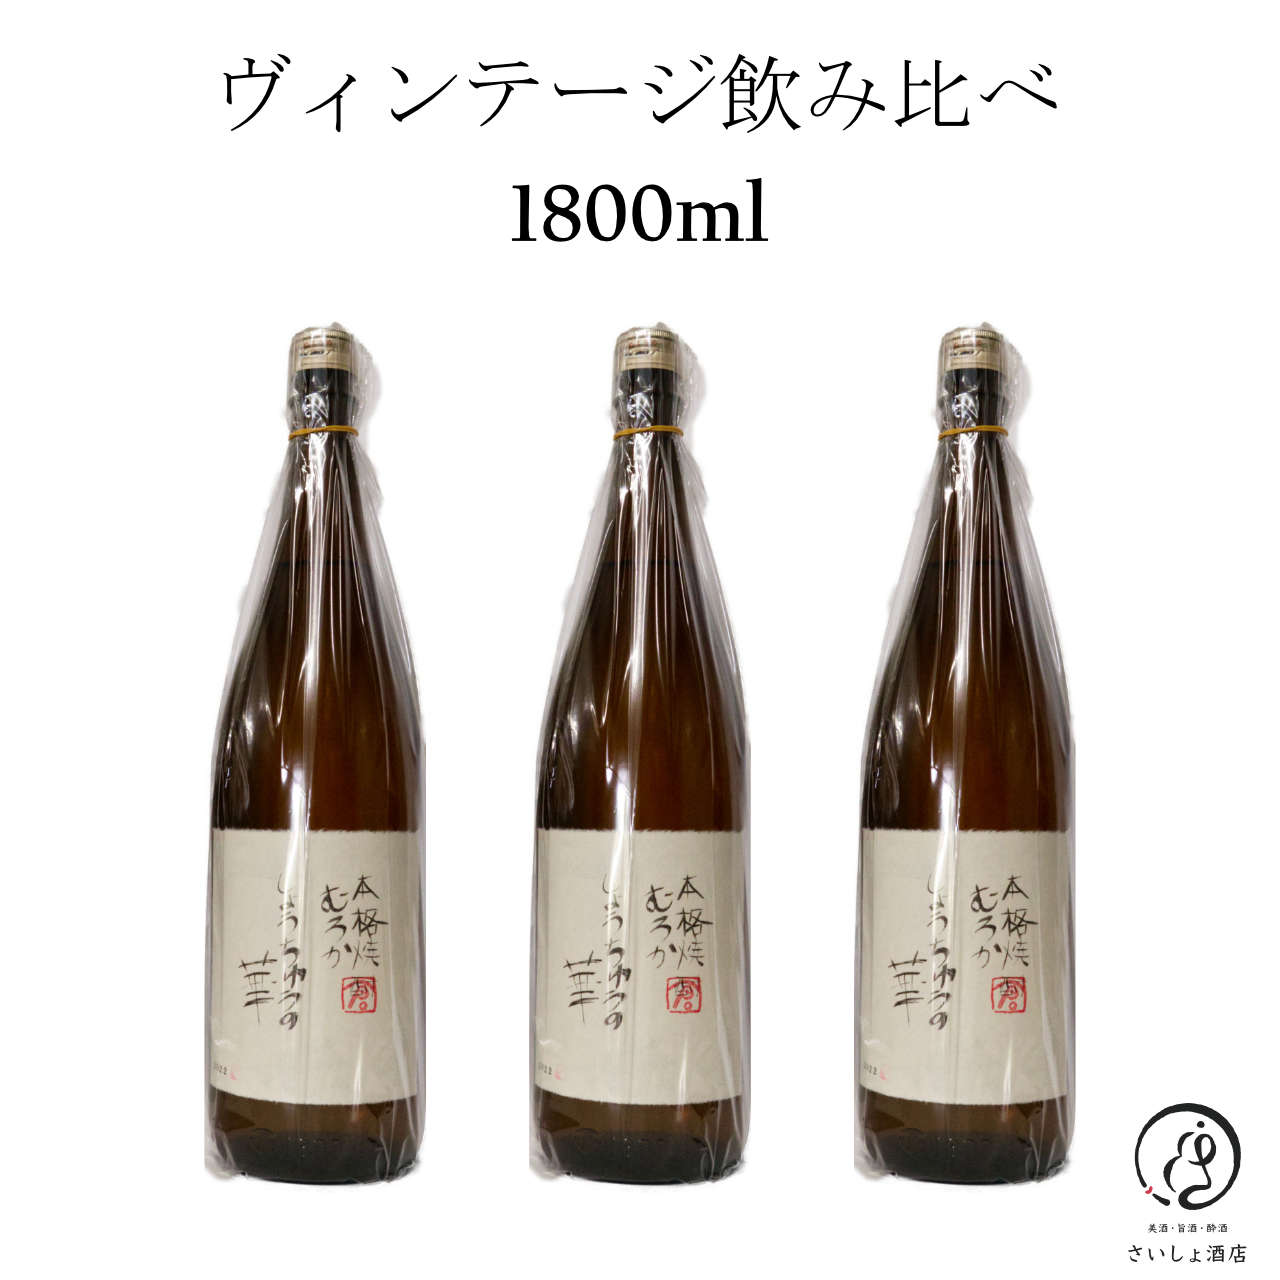 ☆岩倉酒造飲み比べセット☆しょうちゅうの華 月の中35度 1800mlセット 